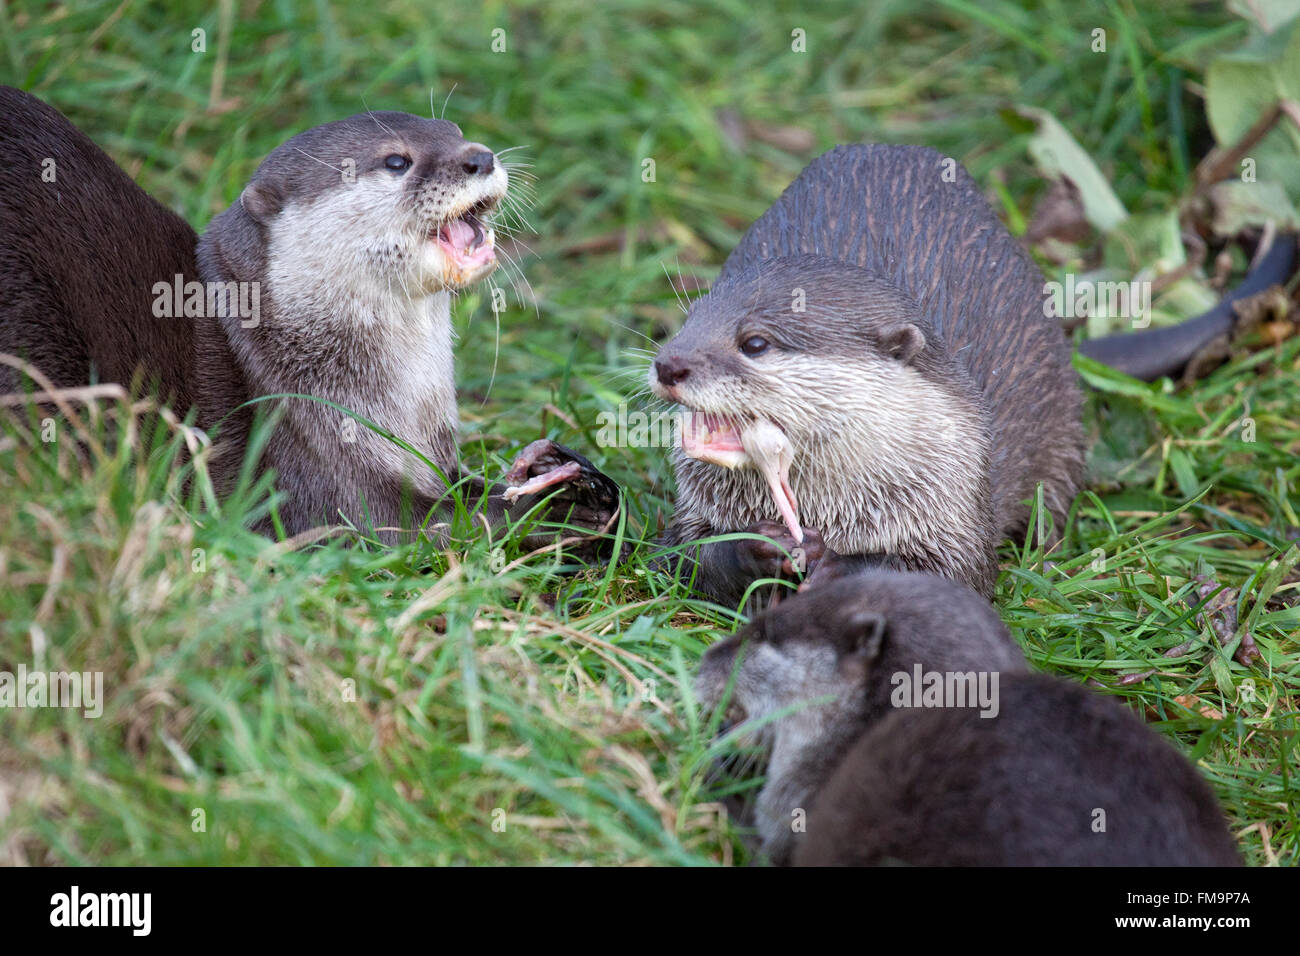 Oriental piccola artigliato lontre di mangiare la loro preda Foto Stock